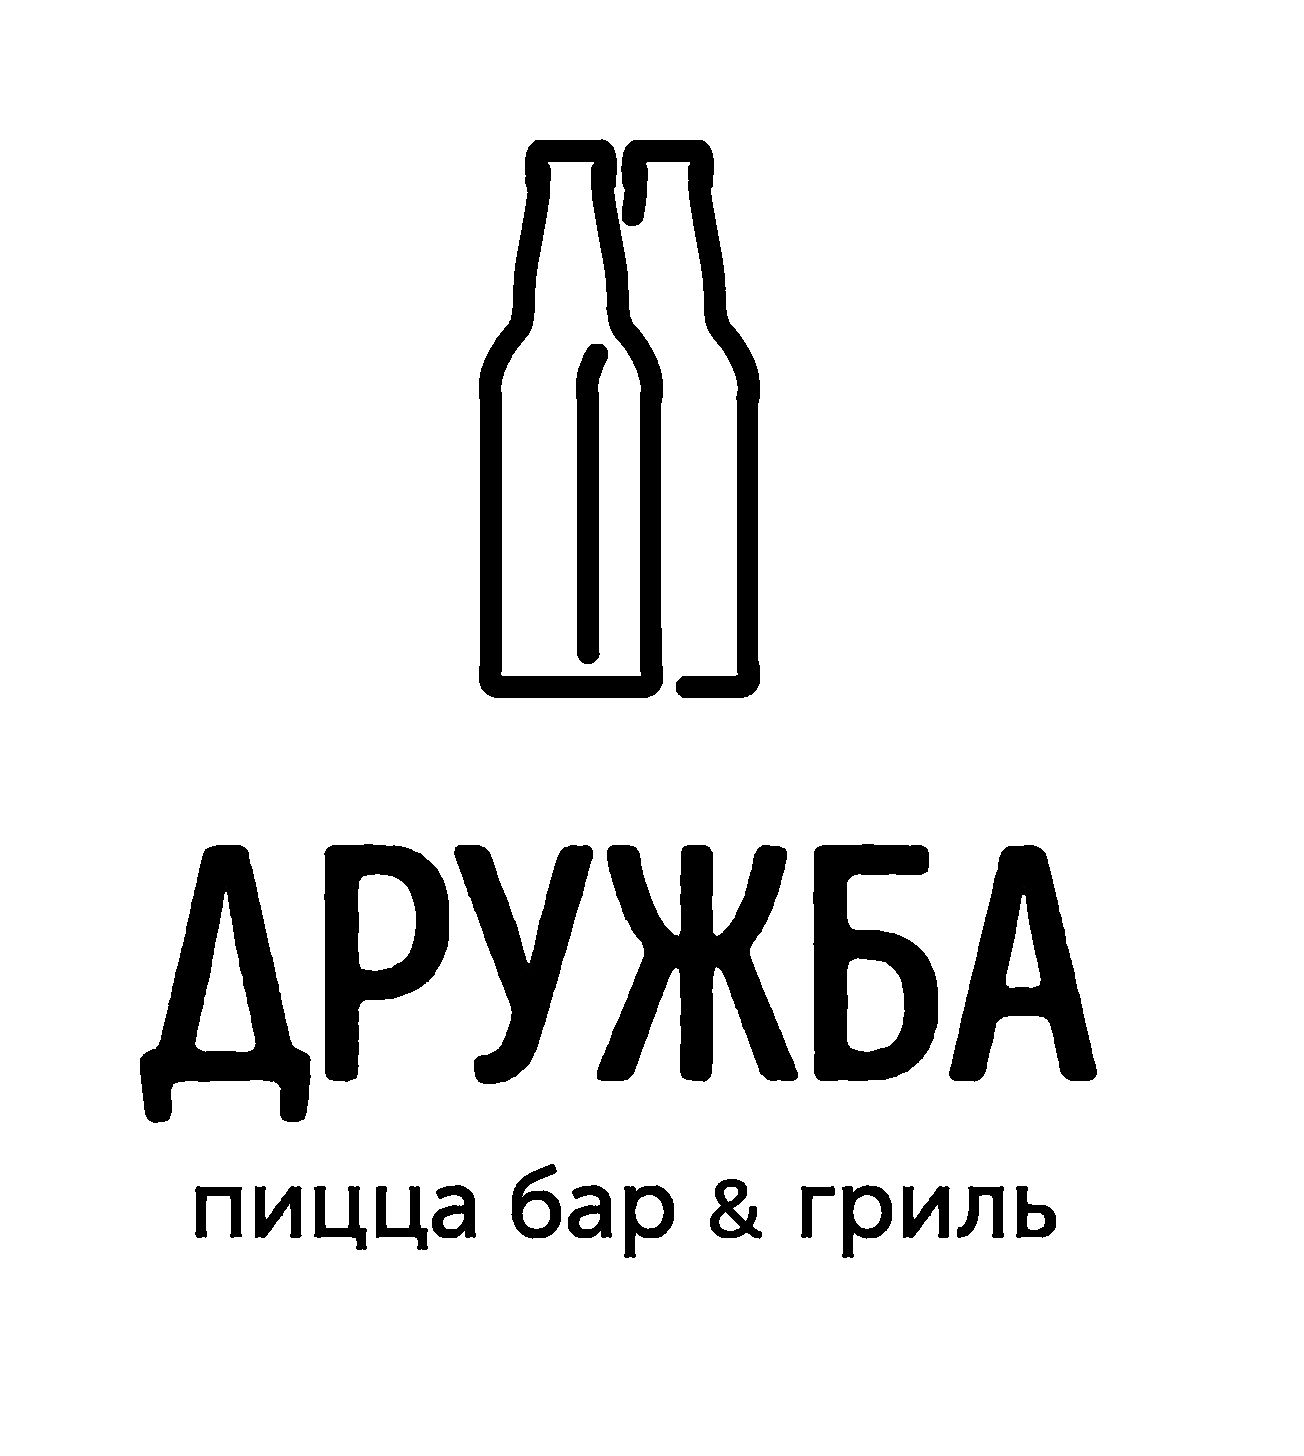 Логотип_Яндекс черный.png